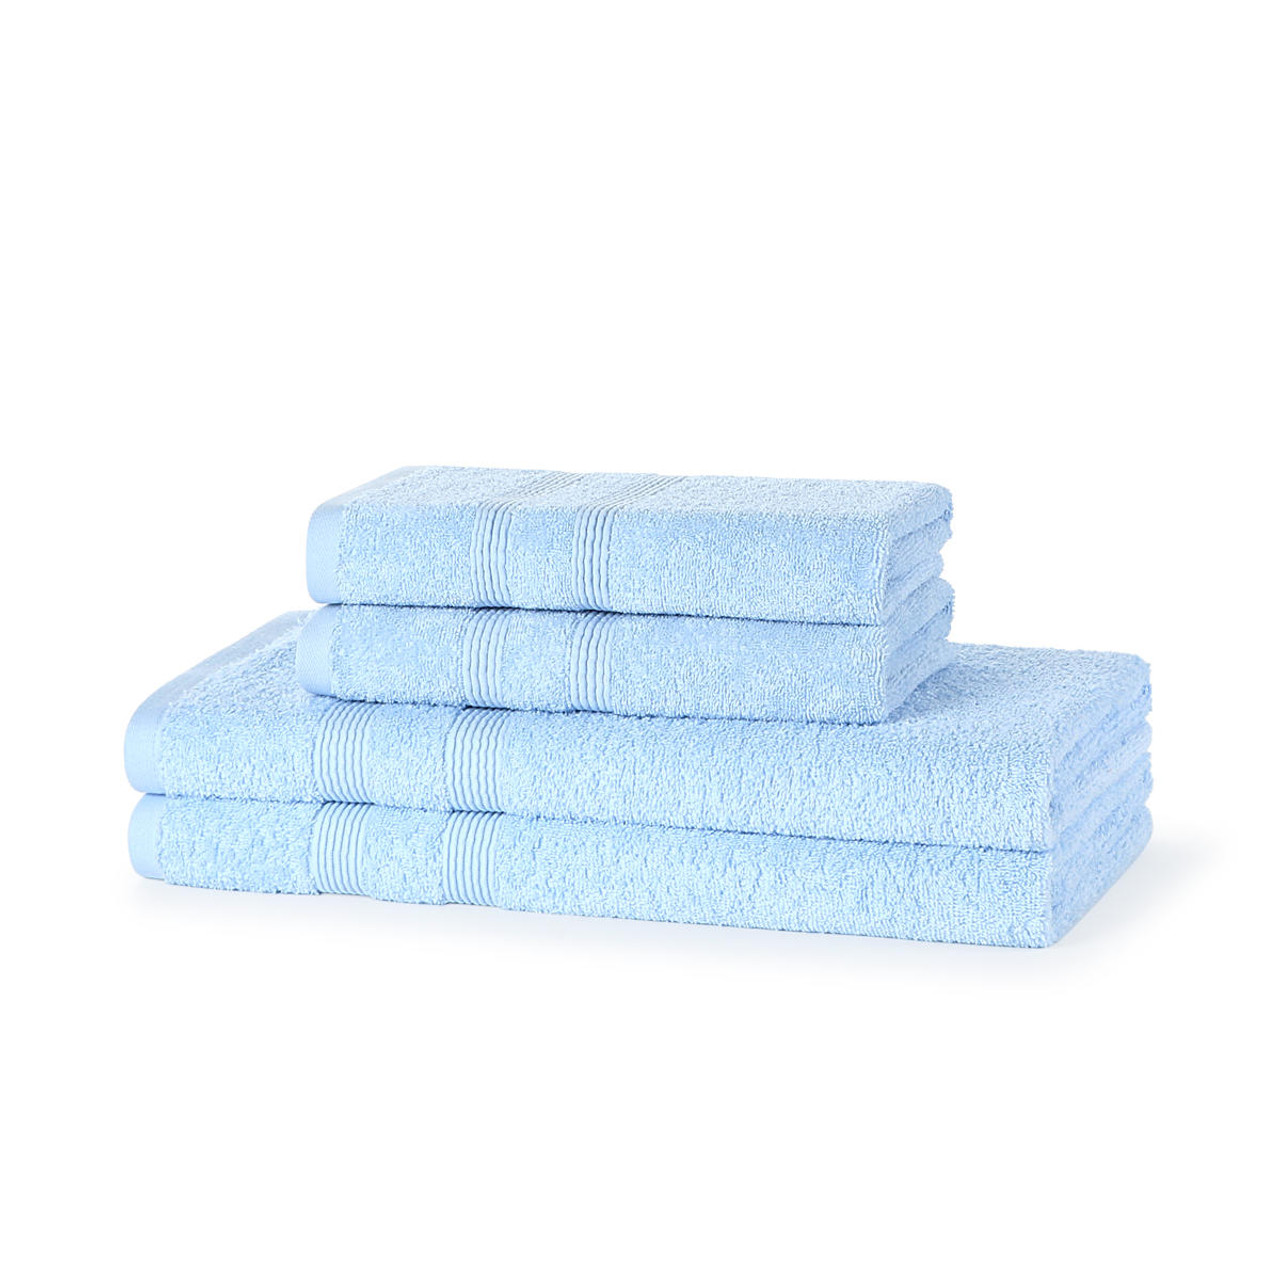 4 Piece 500GSM Towel Bale - 2 Hand Towels, 2 Bath Towels - The Towel Shop